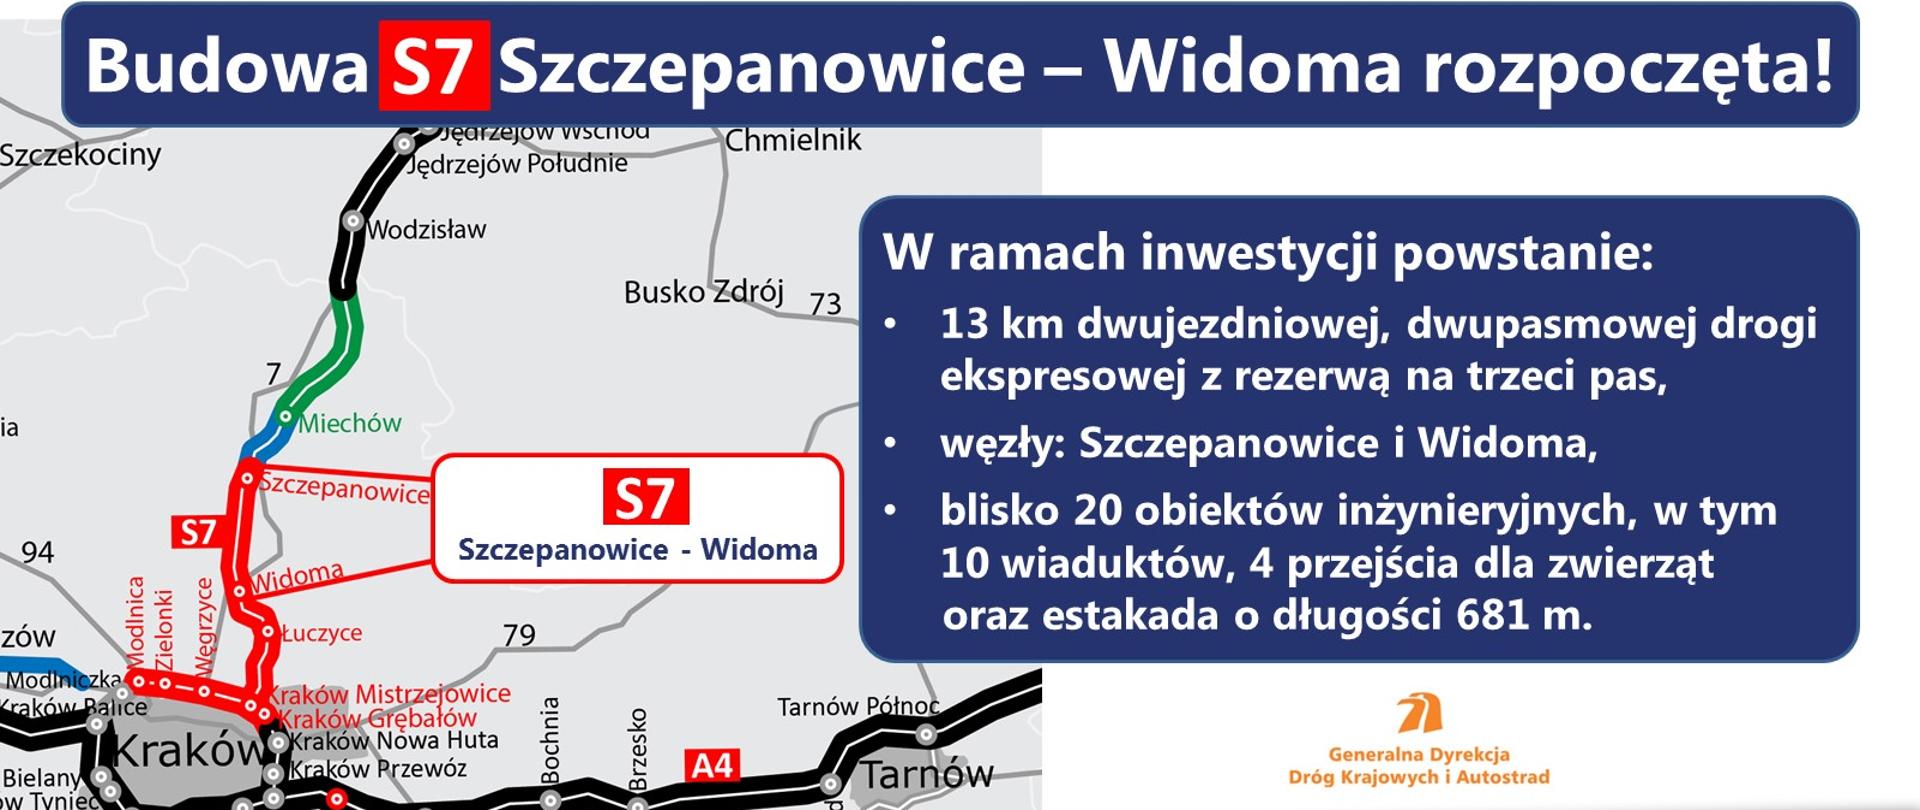 Coraz bliżej ekspresowego połączenia Warszawy i Krakowa – kolejny odcinek S7 w budowie